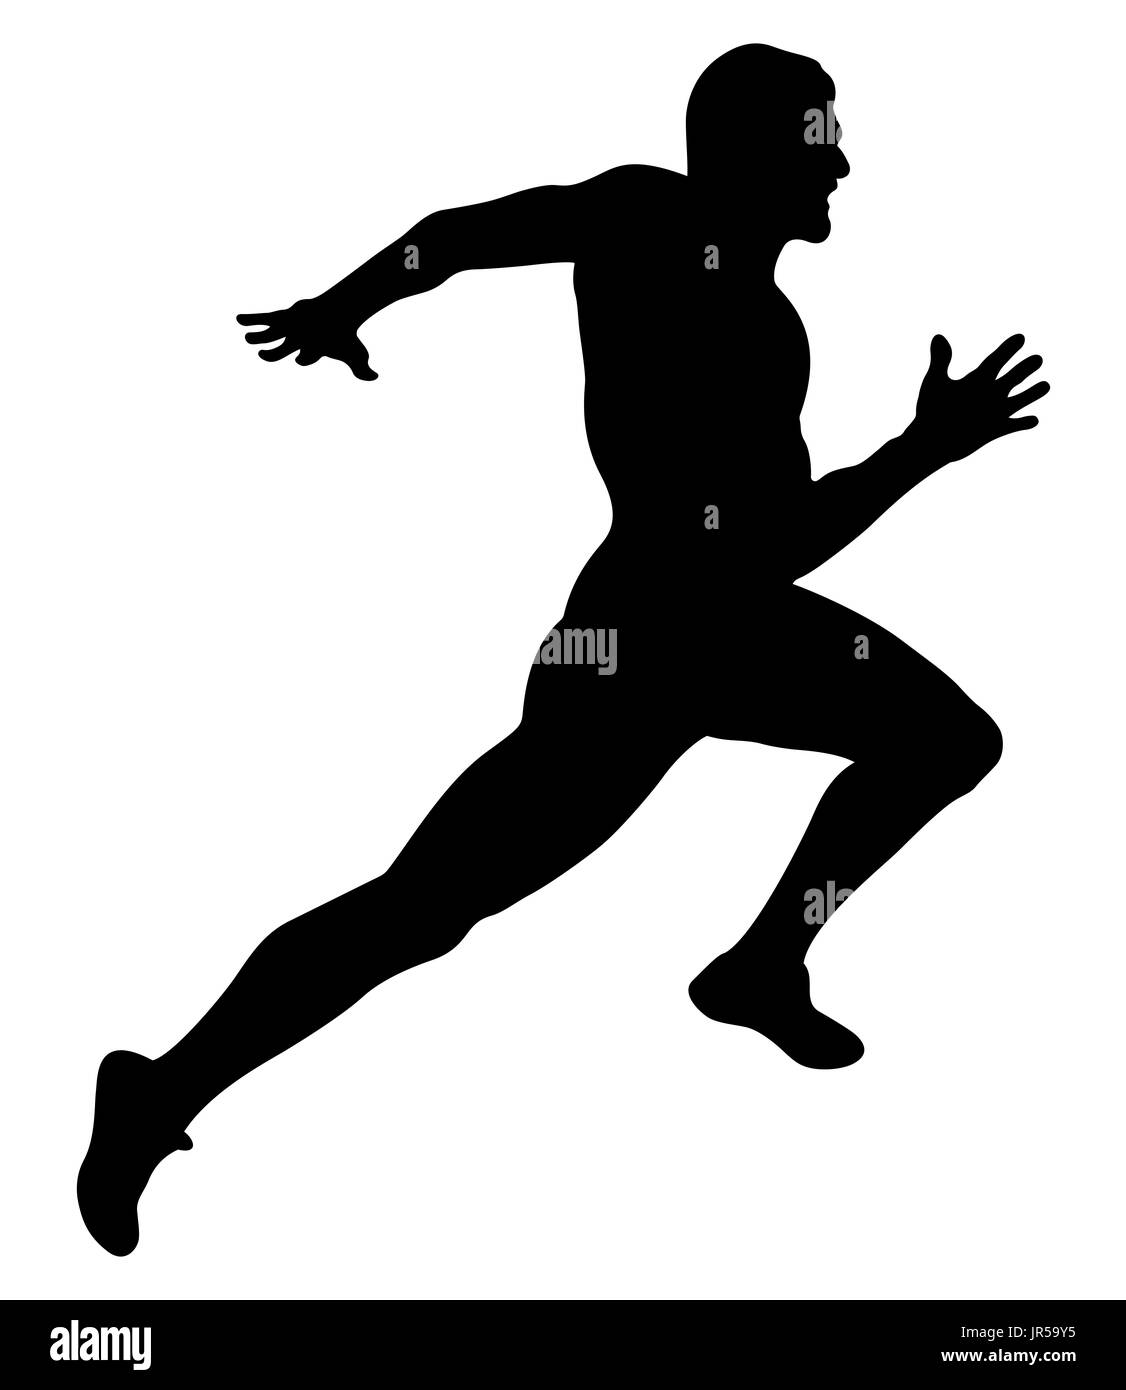 explosive running muscular sprinter runner black silhouette Stock Photo